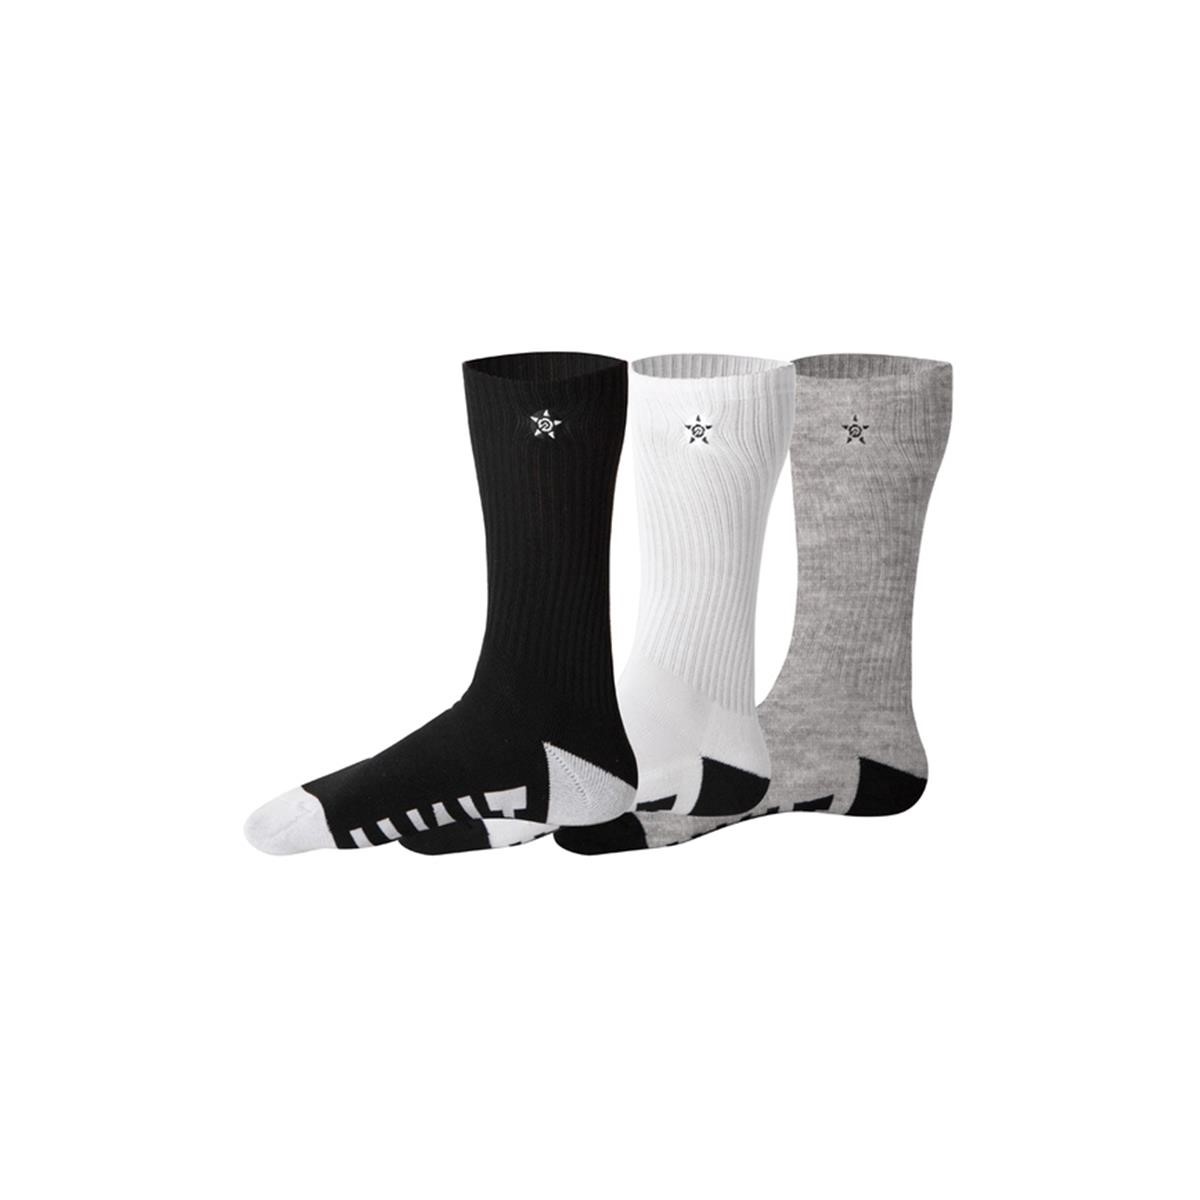 Unit Socken Hilux 3er Pack, Multi